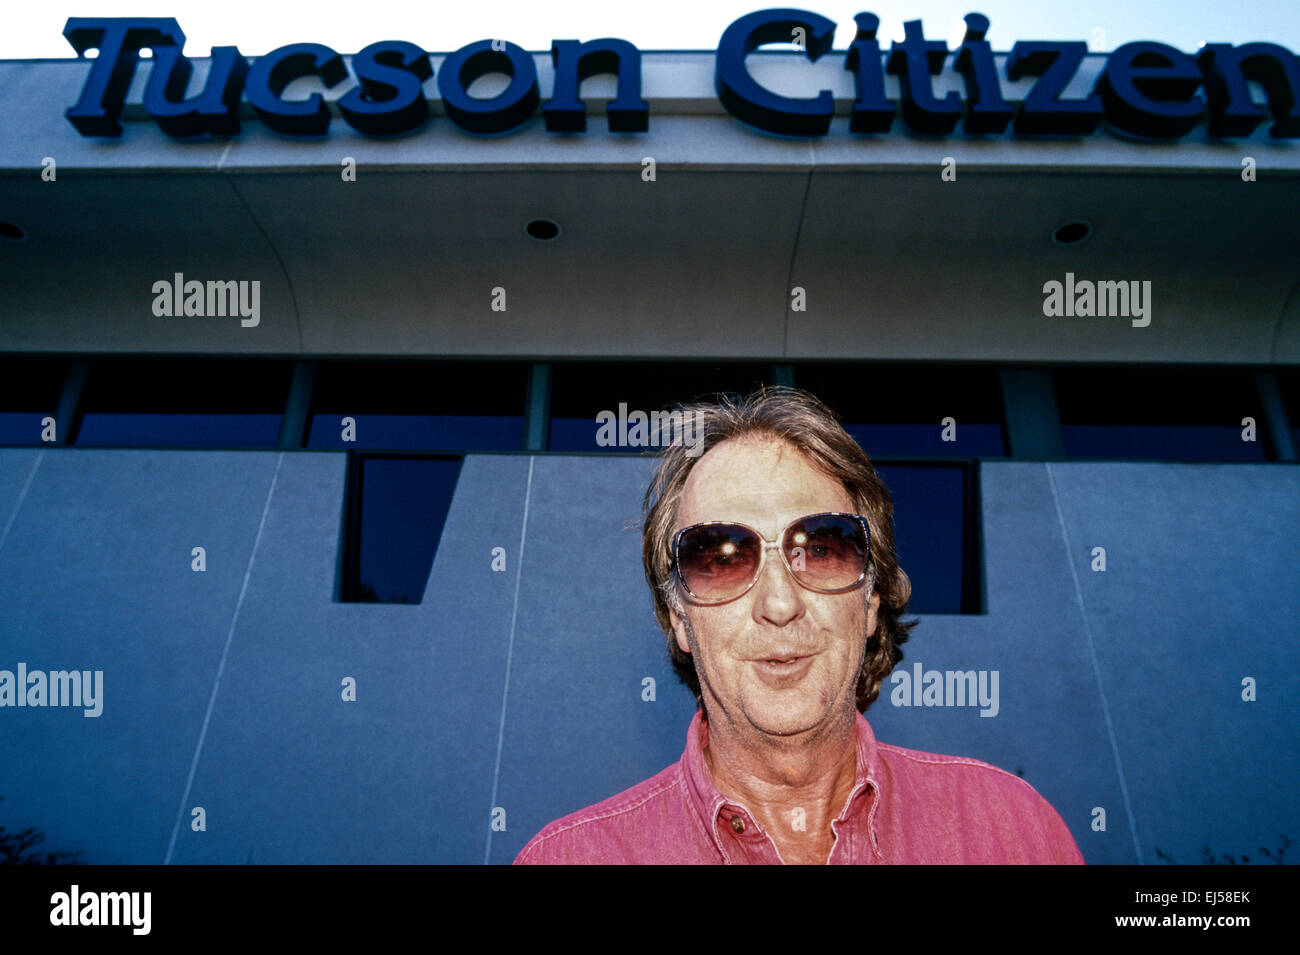 TUCSON, Arizona - SEPTEMBRE 25 - l'auteur Charles Bowden se tient devant le Tucson Citizen à Tucson, Arizona, le 25 septembre 1998 Banque D'Images